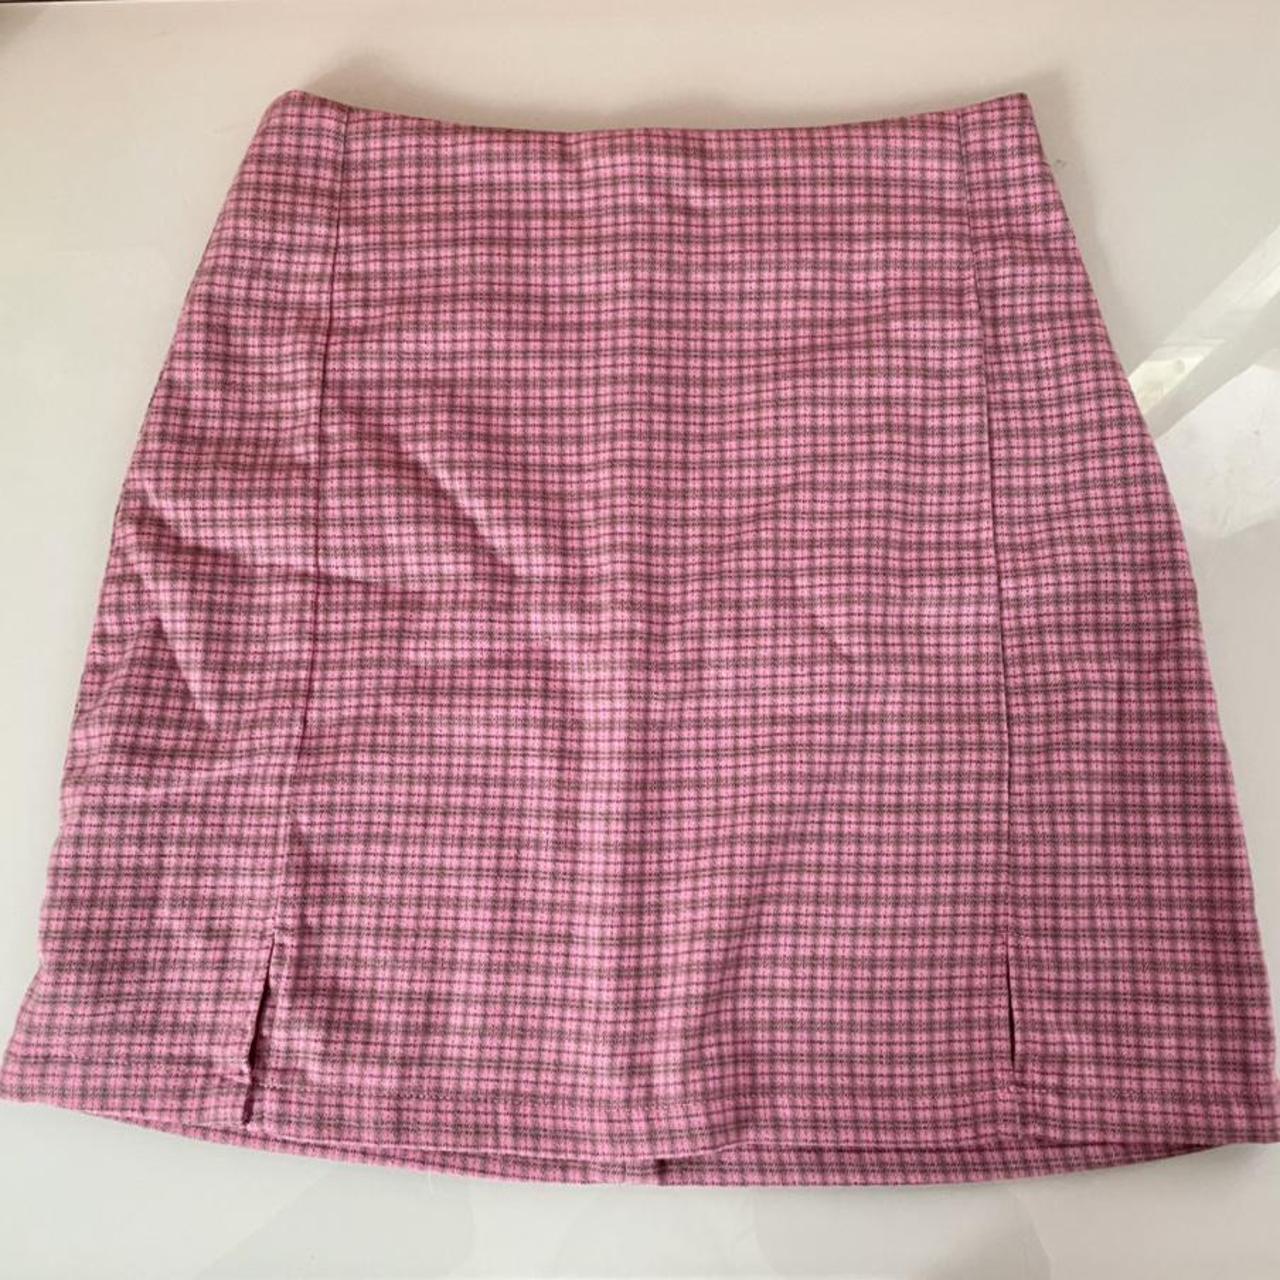 Brandy Melville Women's Pink and Grey Skirt | Depop